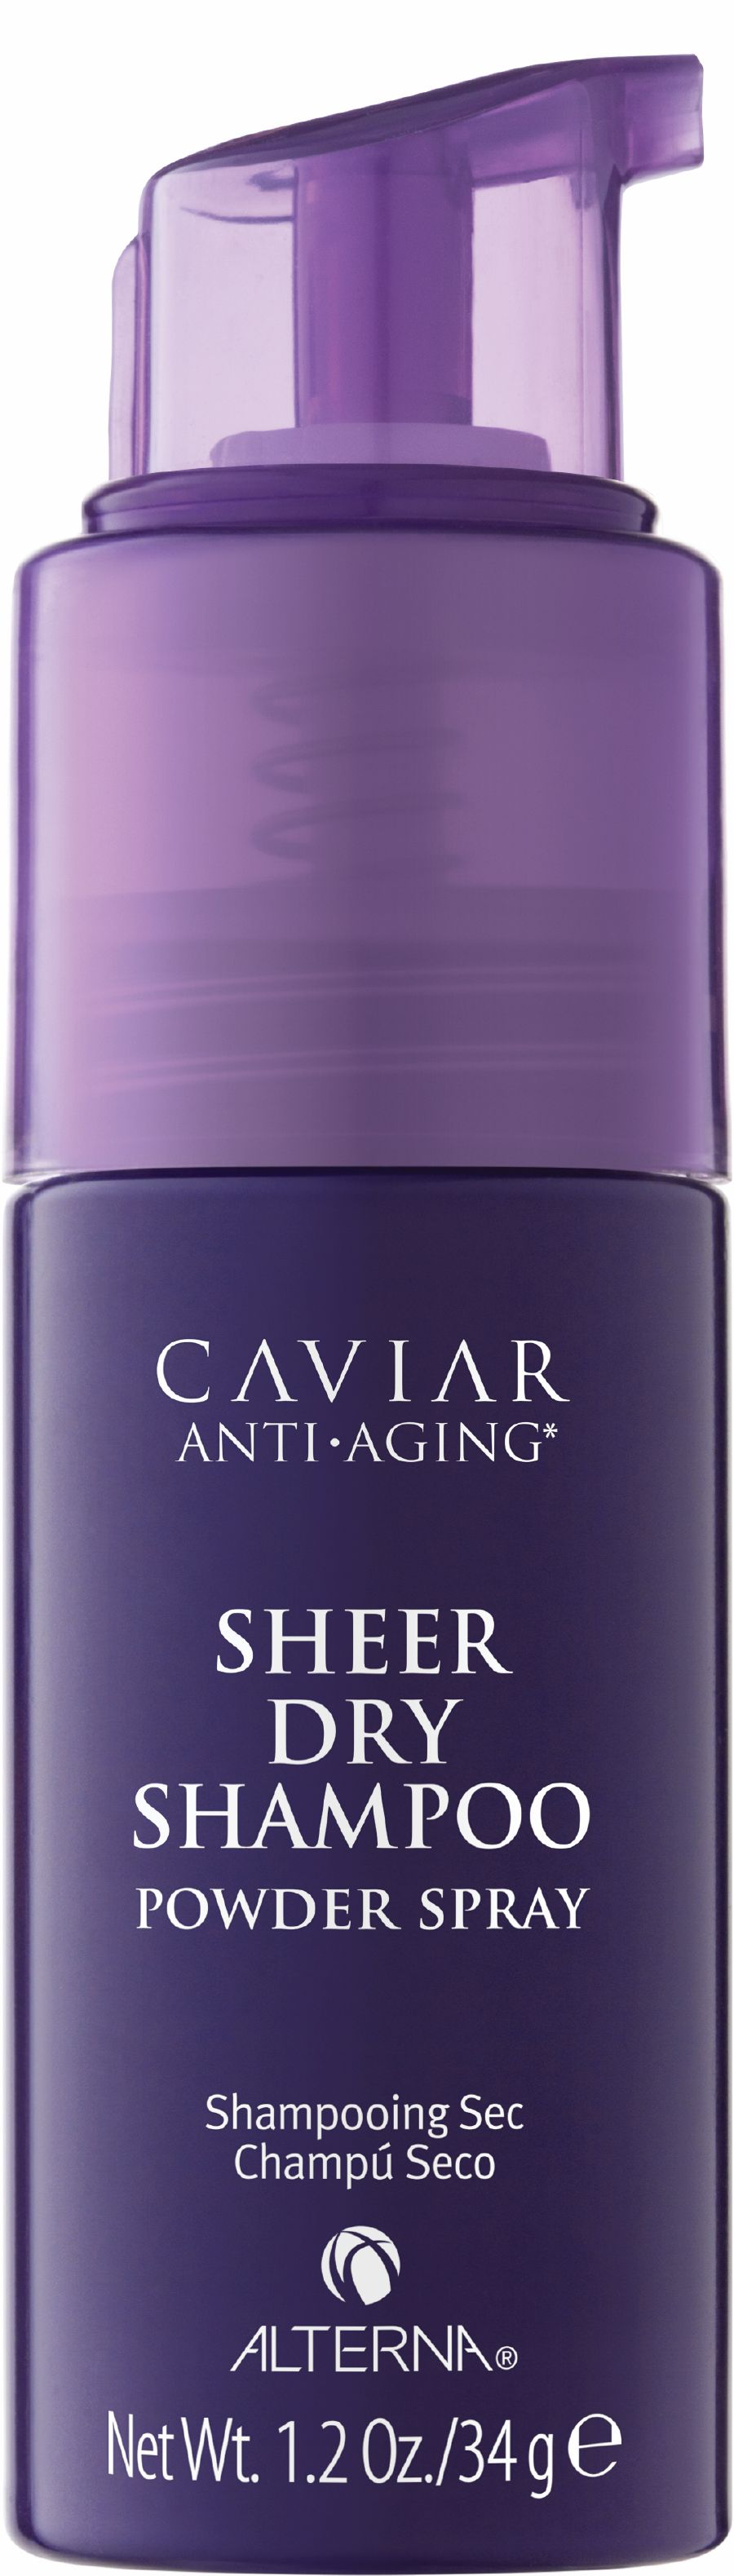 The Caviar Sheer Dry Shampoo.